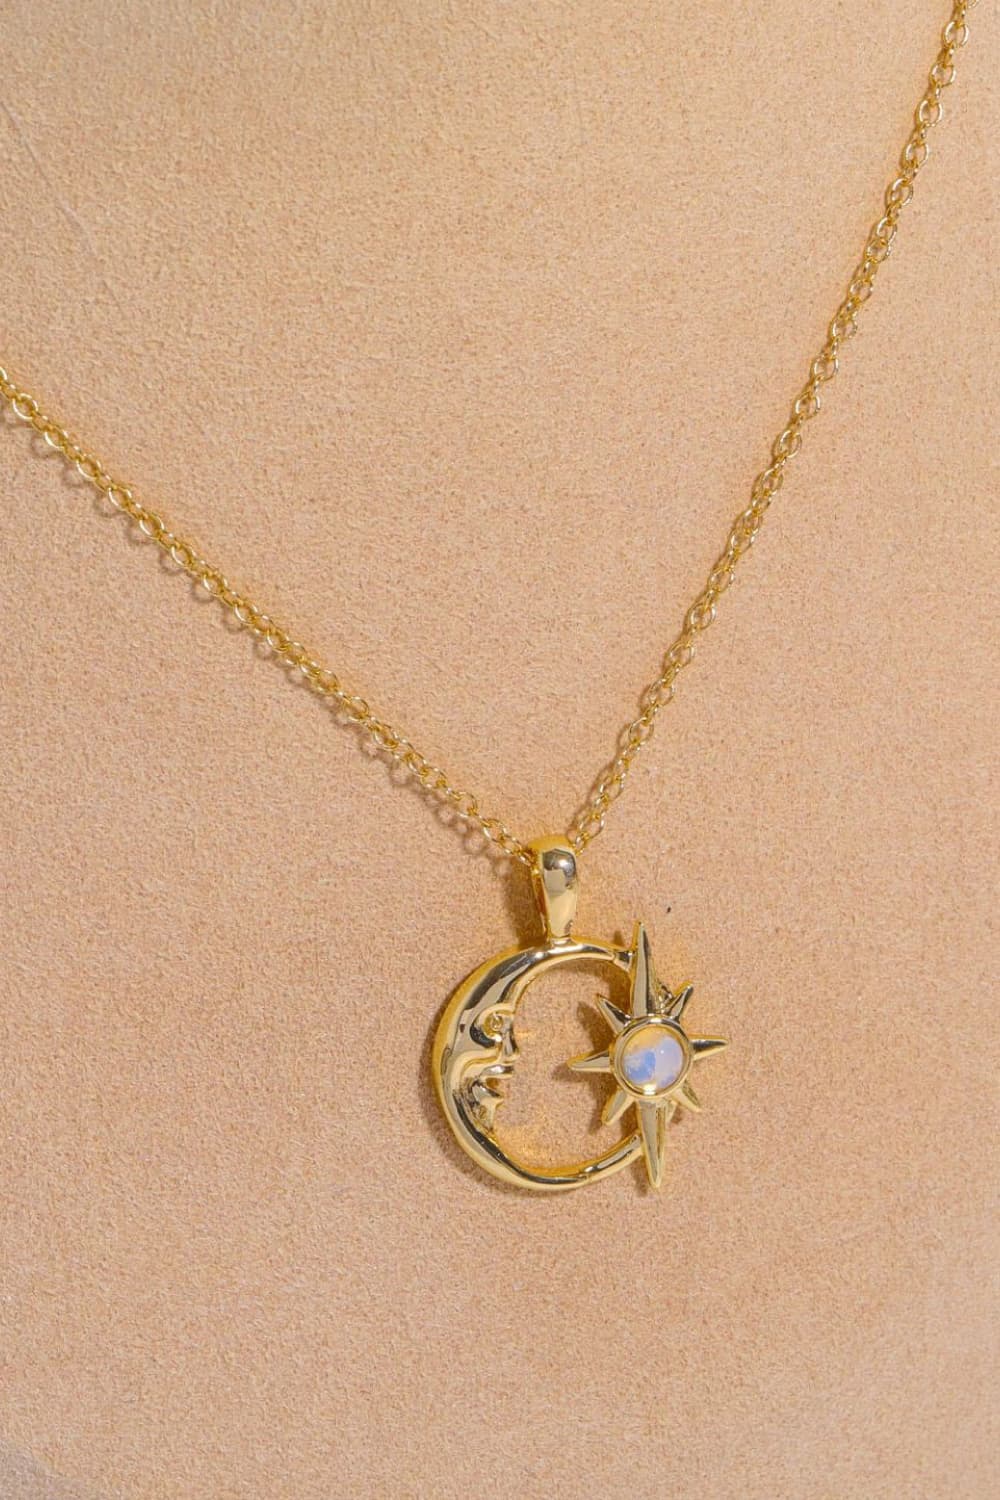 Moon & Star Shape Pendant Necklace - Tangerine Goddess